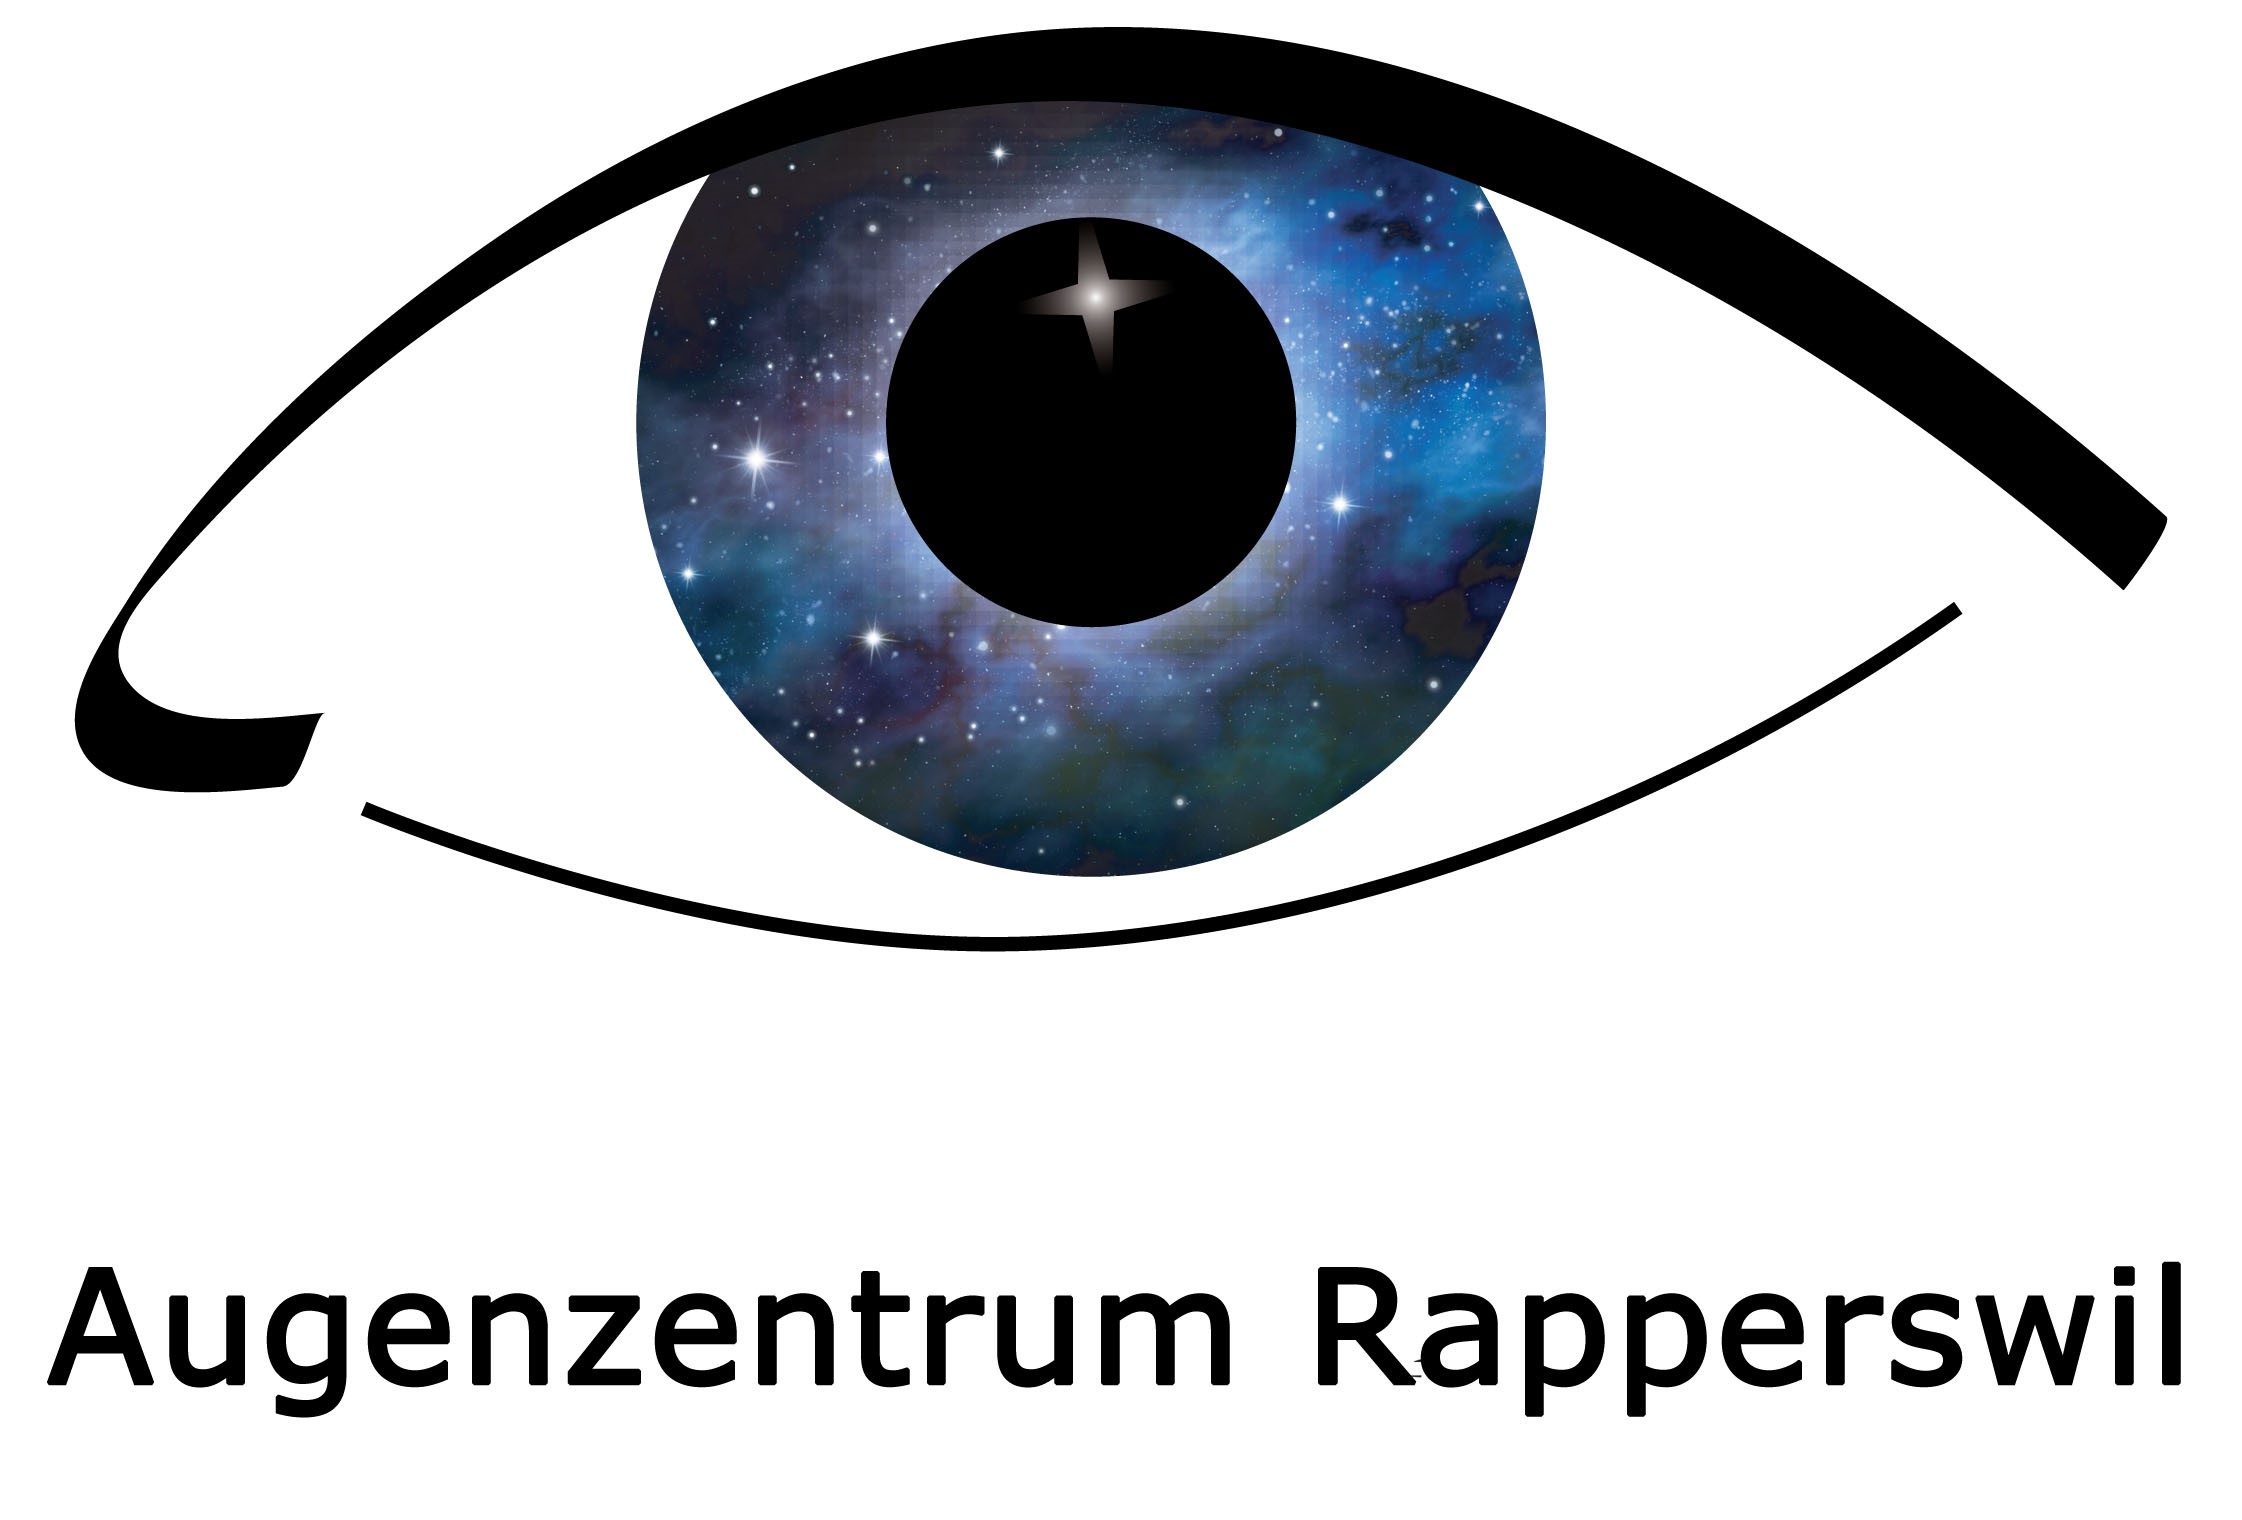 Augenzentrum Rapperswil